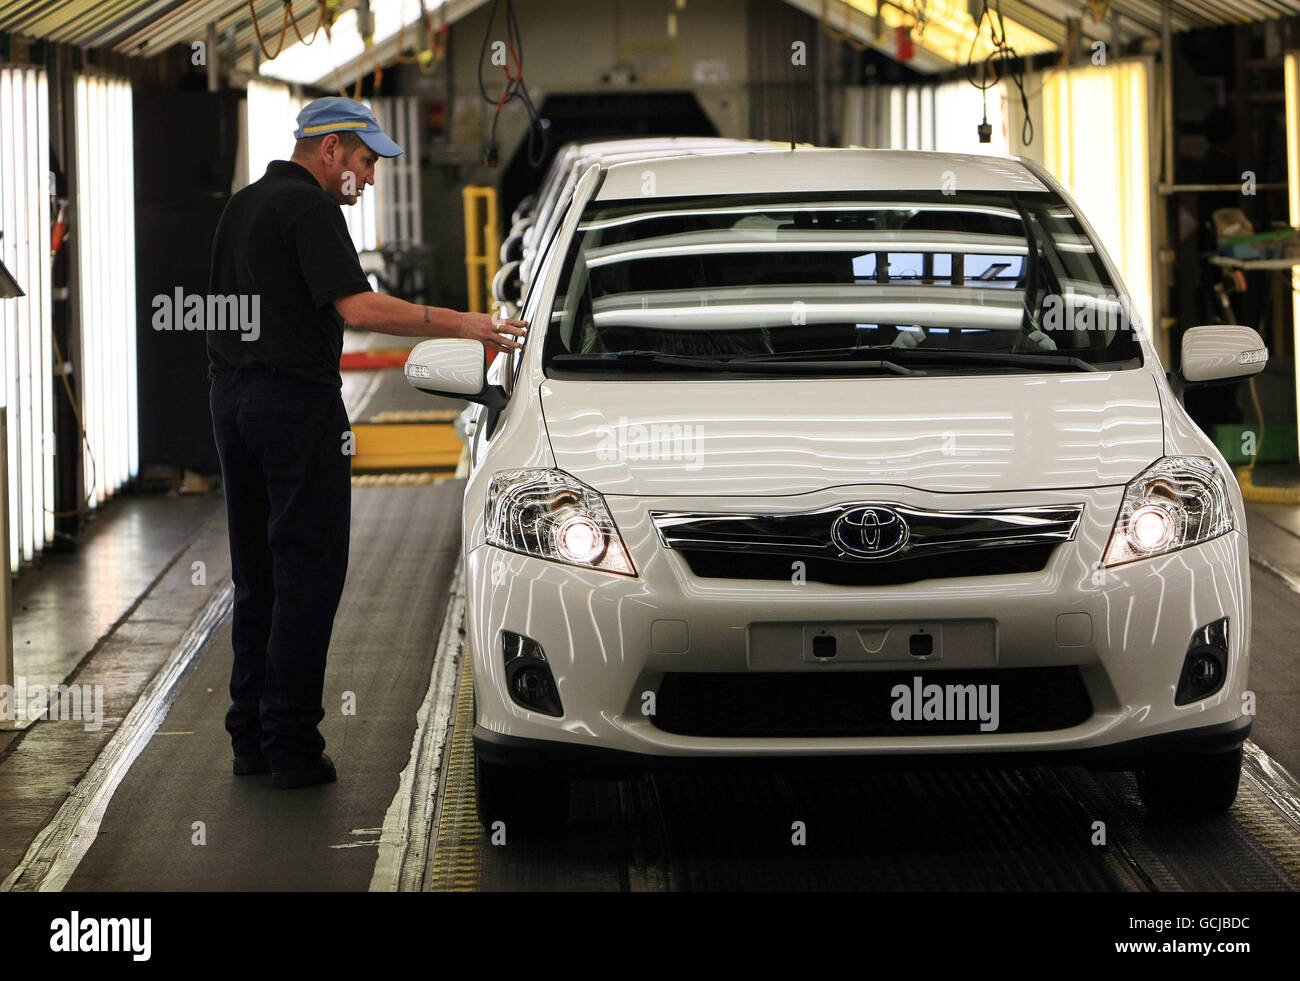 Une voiture Toyota Auris Hybrid Synergy Drive (HSD) fait l'objet d'une inspection finale lorsqu'elle est dévoilée à l'usine de Burnaston près de Derby.Il s'agit du premier véhicule hybride complet produit en Europe. Banque D'Images